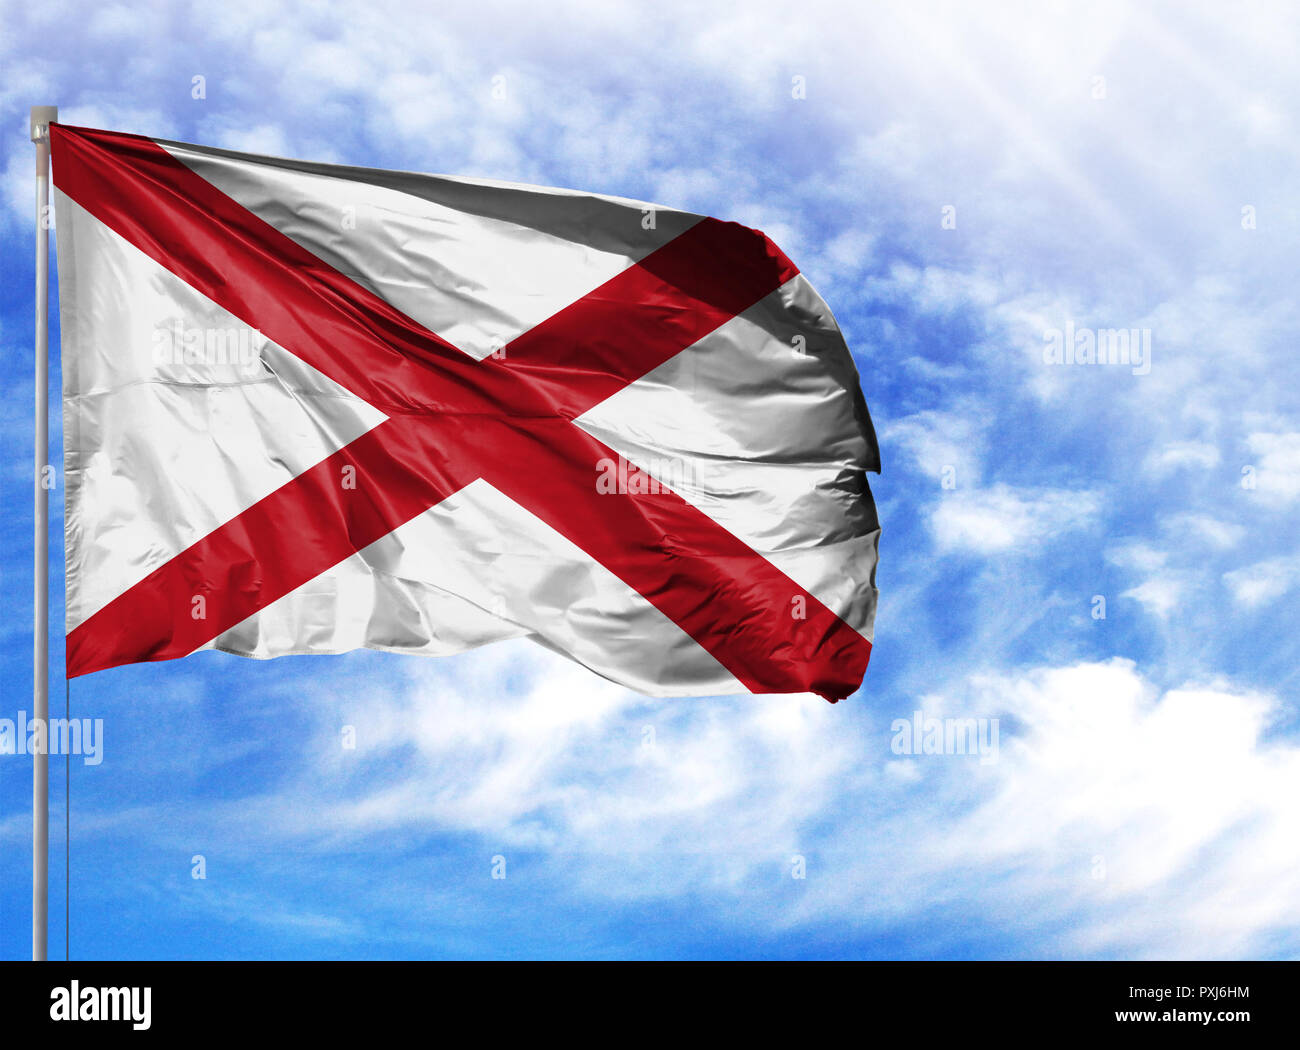 Flagge Alabama Auf Einem Fahnenmast Vor Blauem Himmel Stockfotografie Alamy